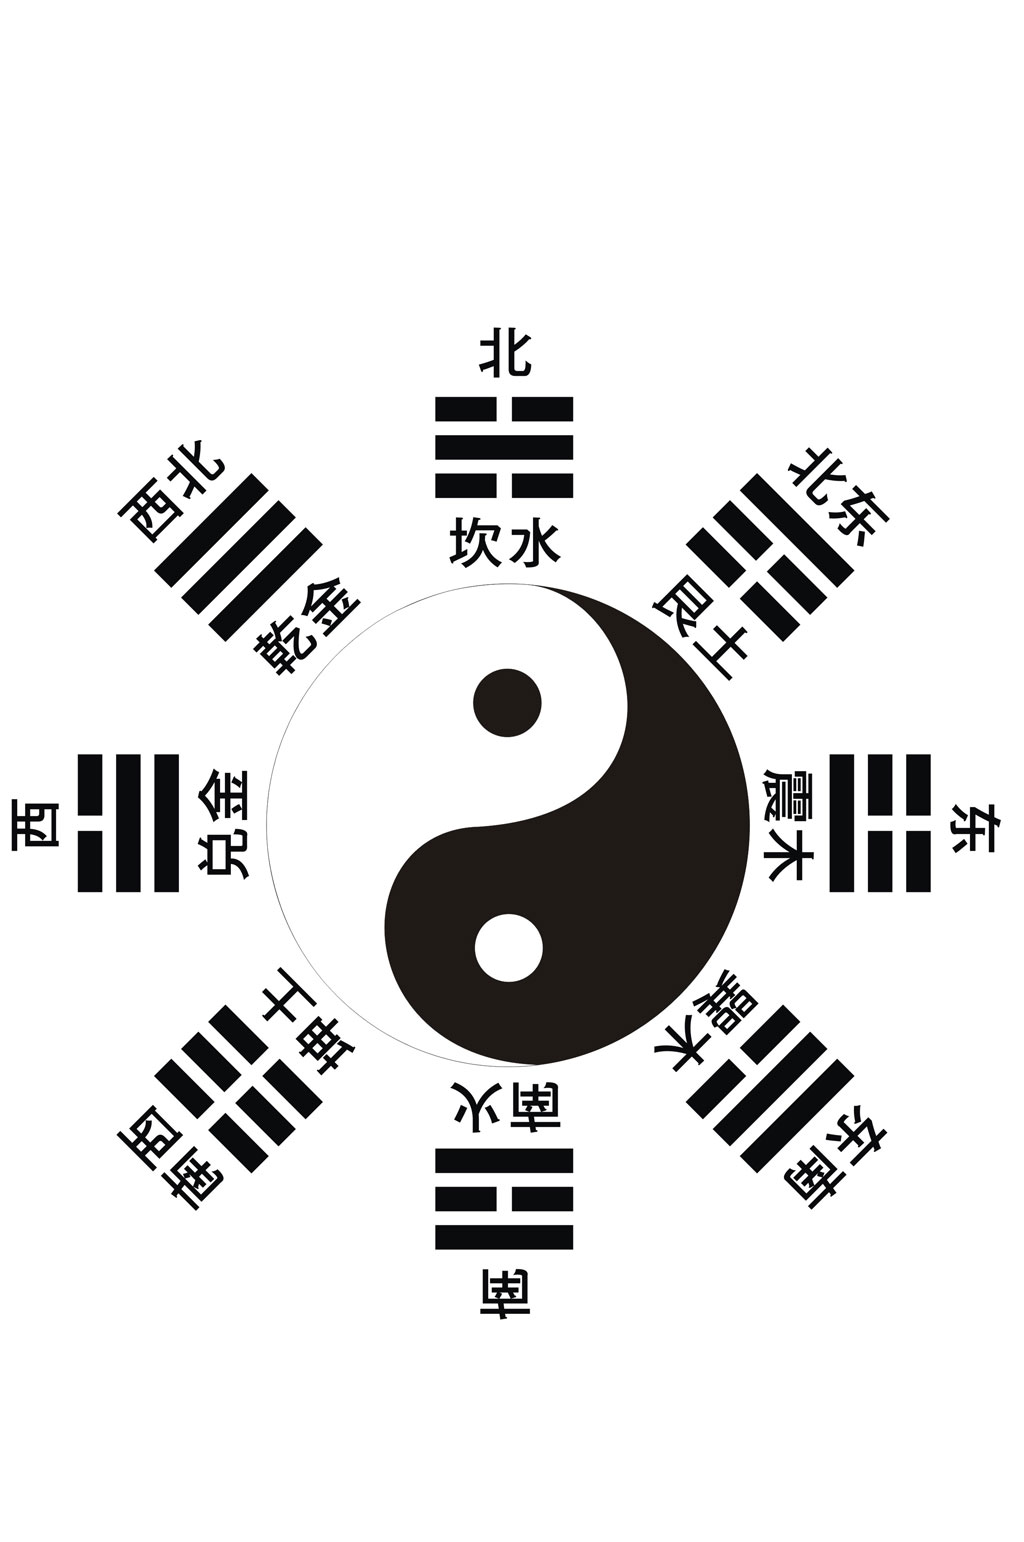 中国八卦图设计